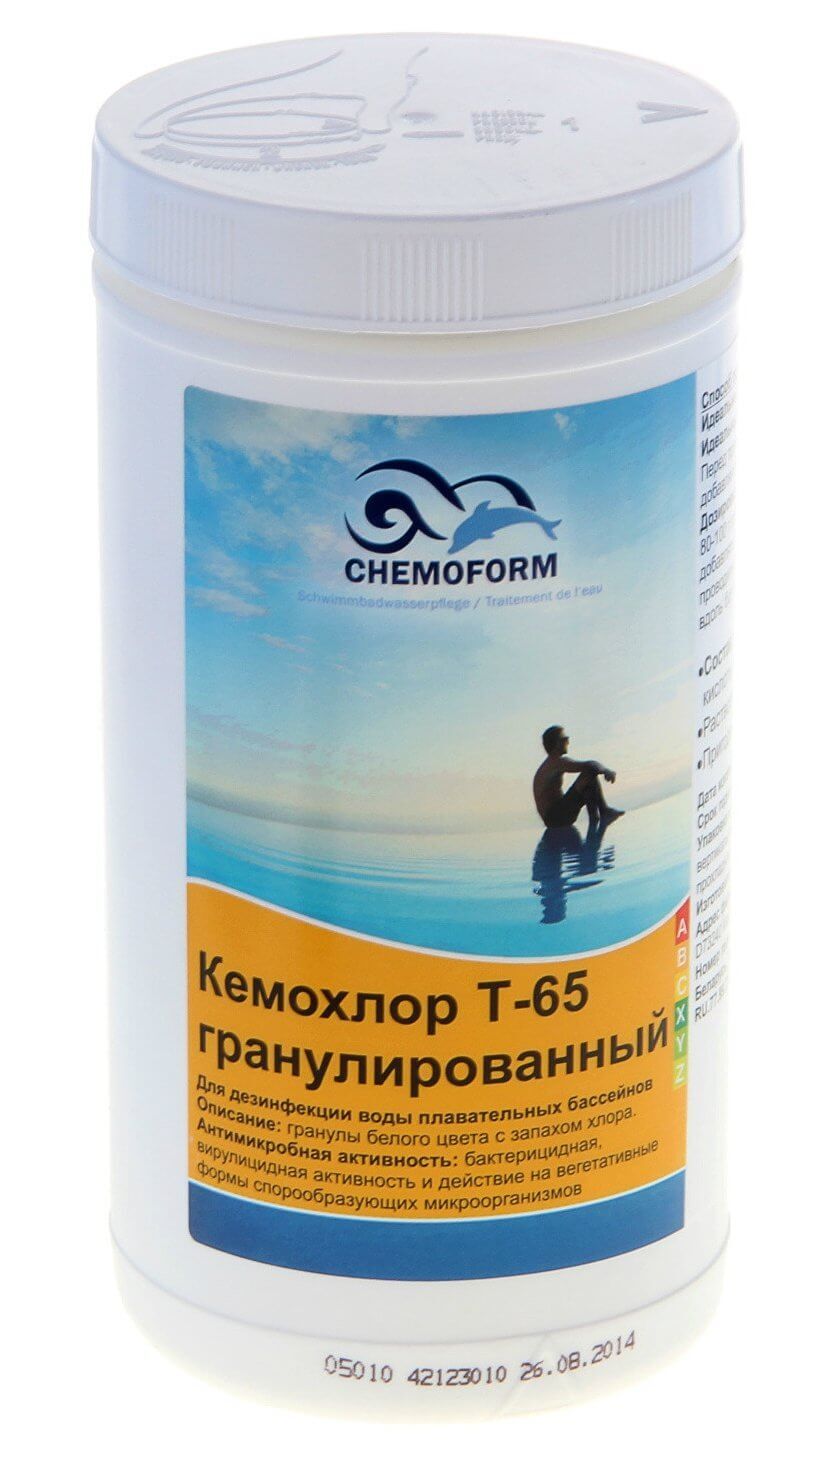 Кемохлор Т-65 гранулированный 1 кг, Chemoform (0501001)